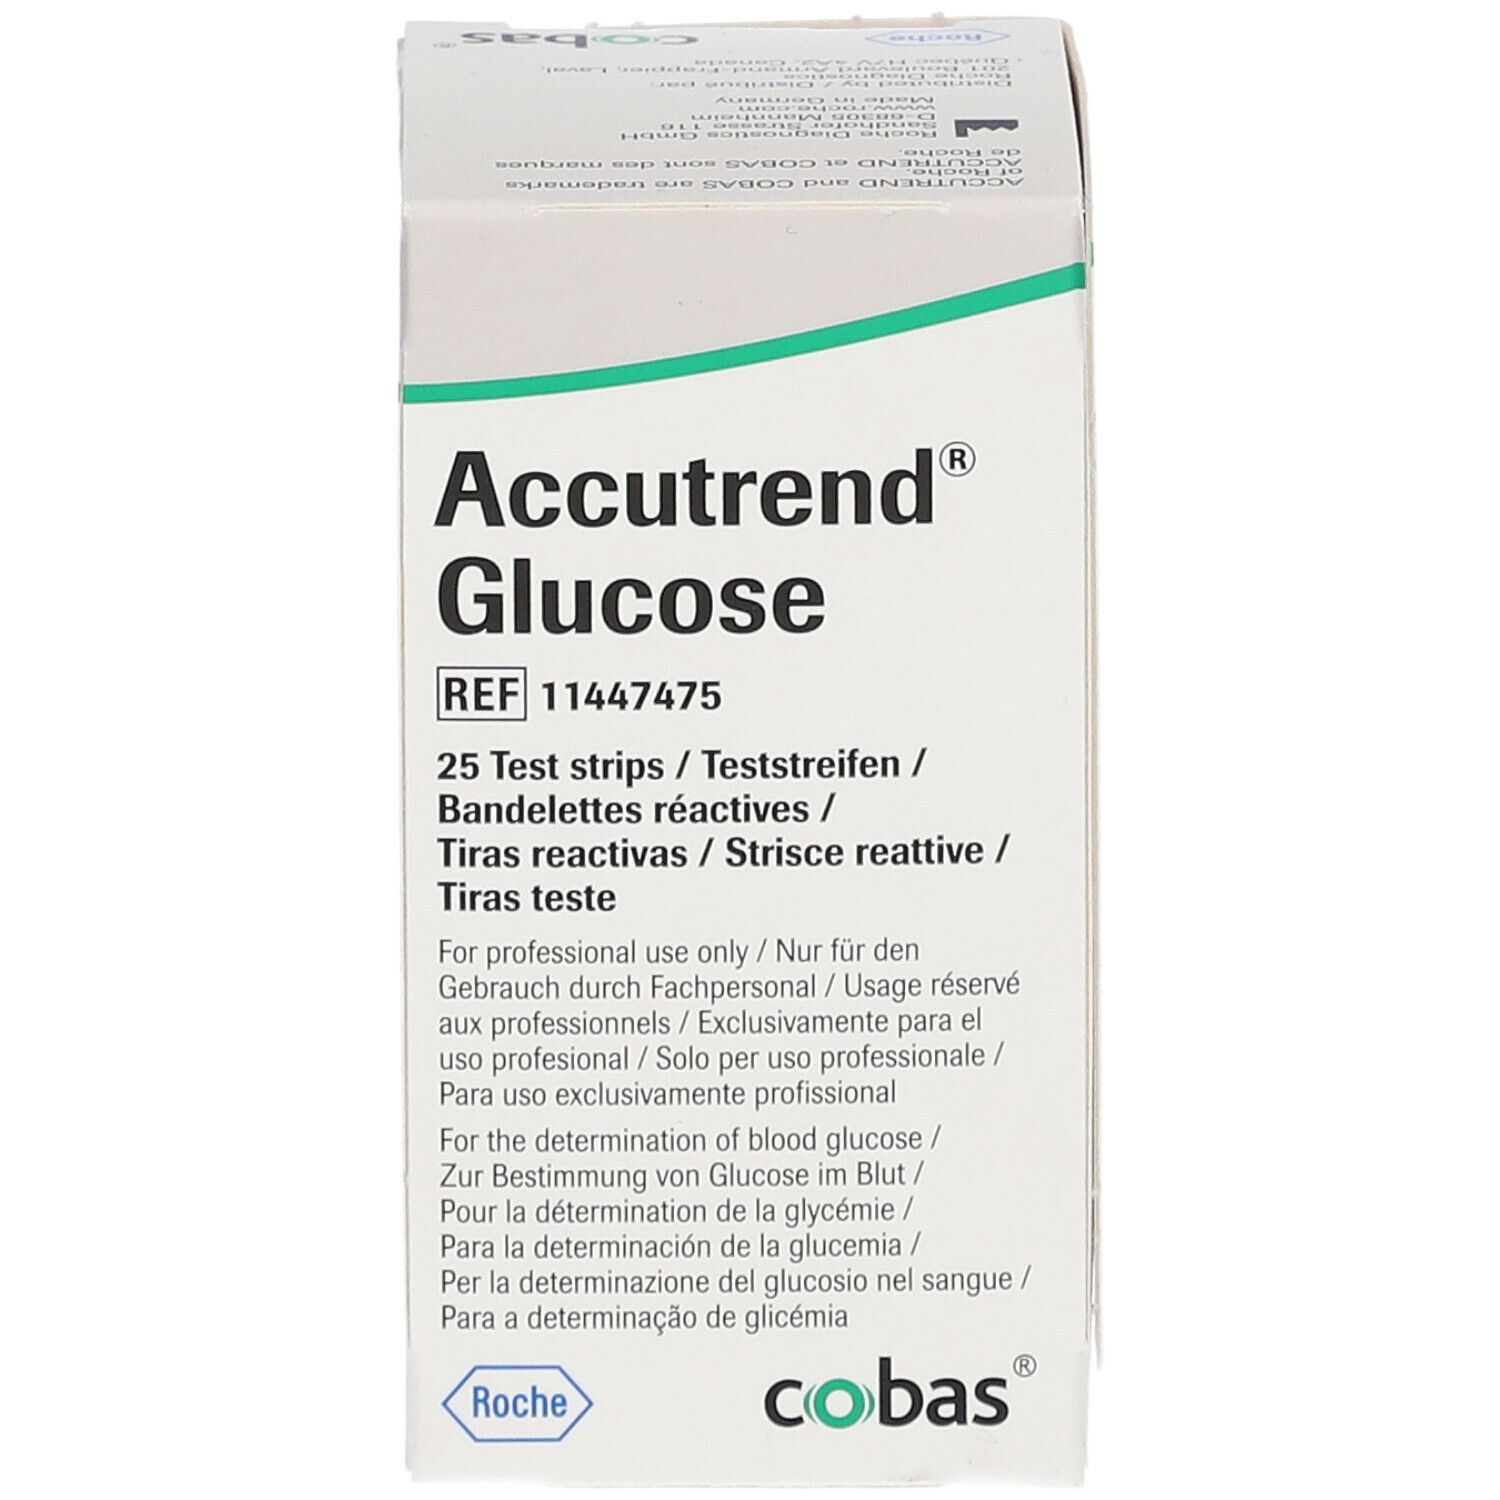 Accutrend® Glucose Teststreifen